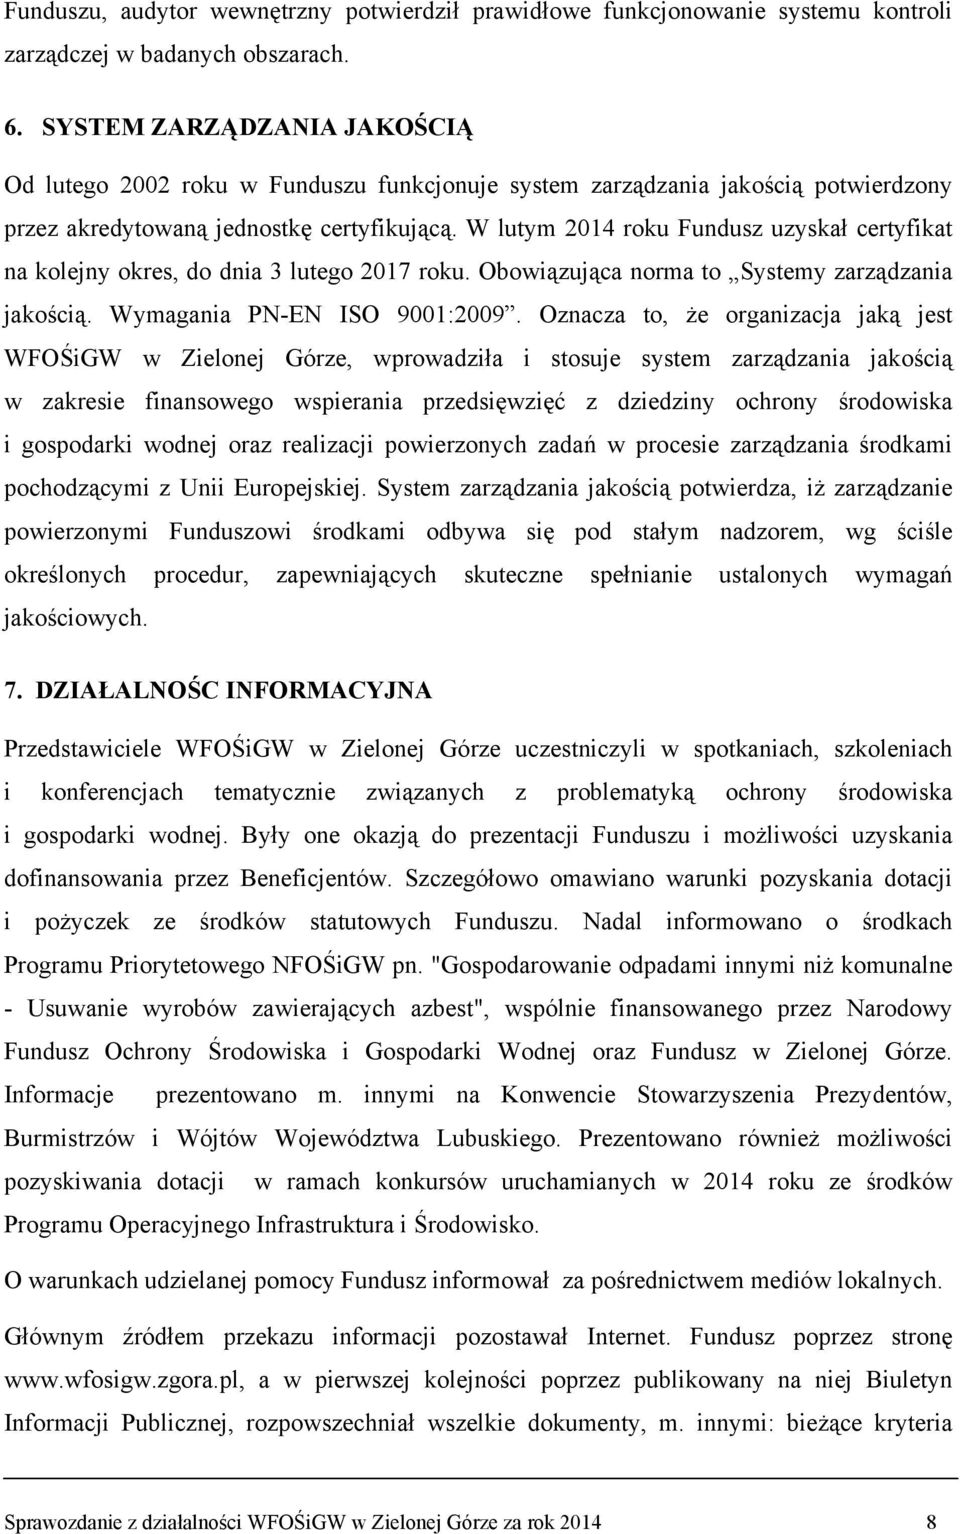 Sprawozdanie Zarządu z działalności Wojewódzkiego Funduszu Ochrony  Środowiska. w 2014 roku - PDF Darmowe pobieranie